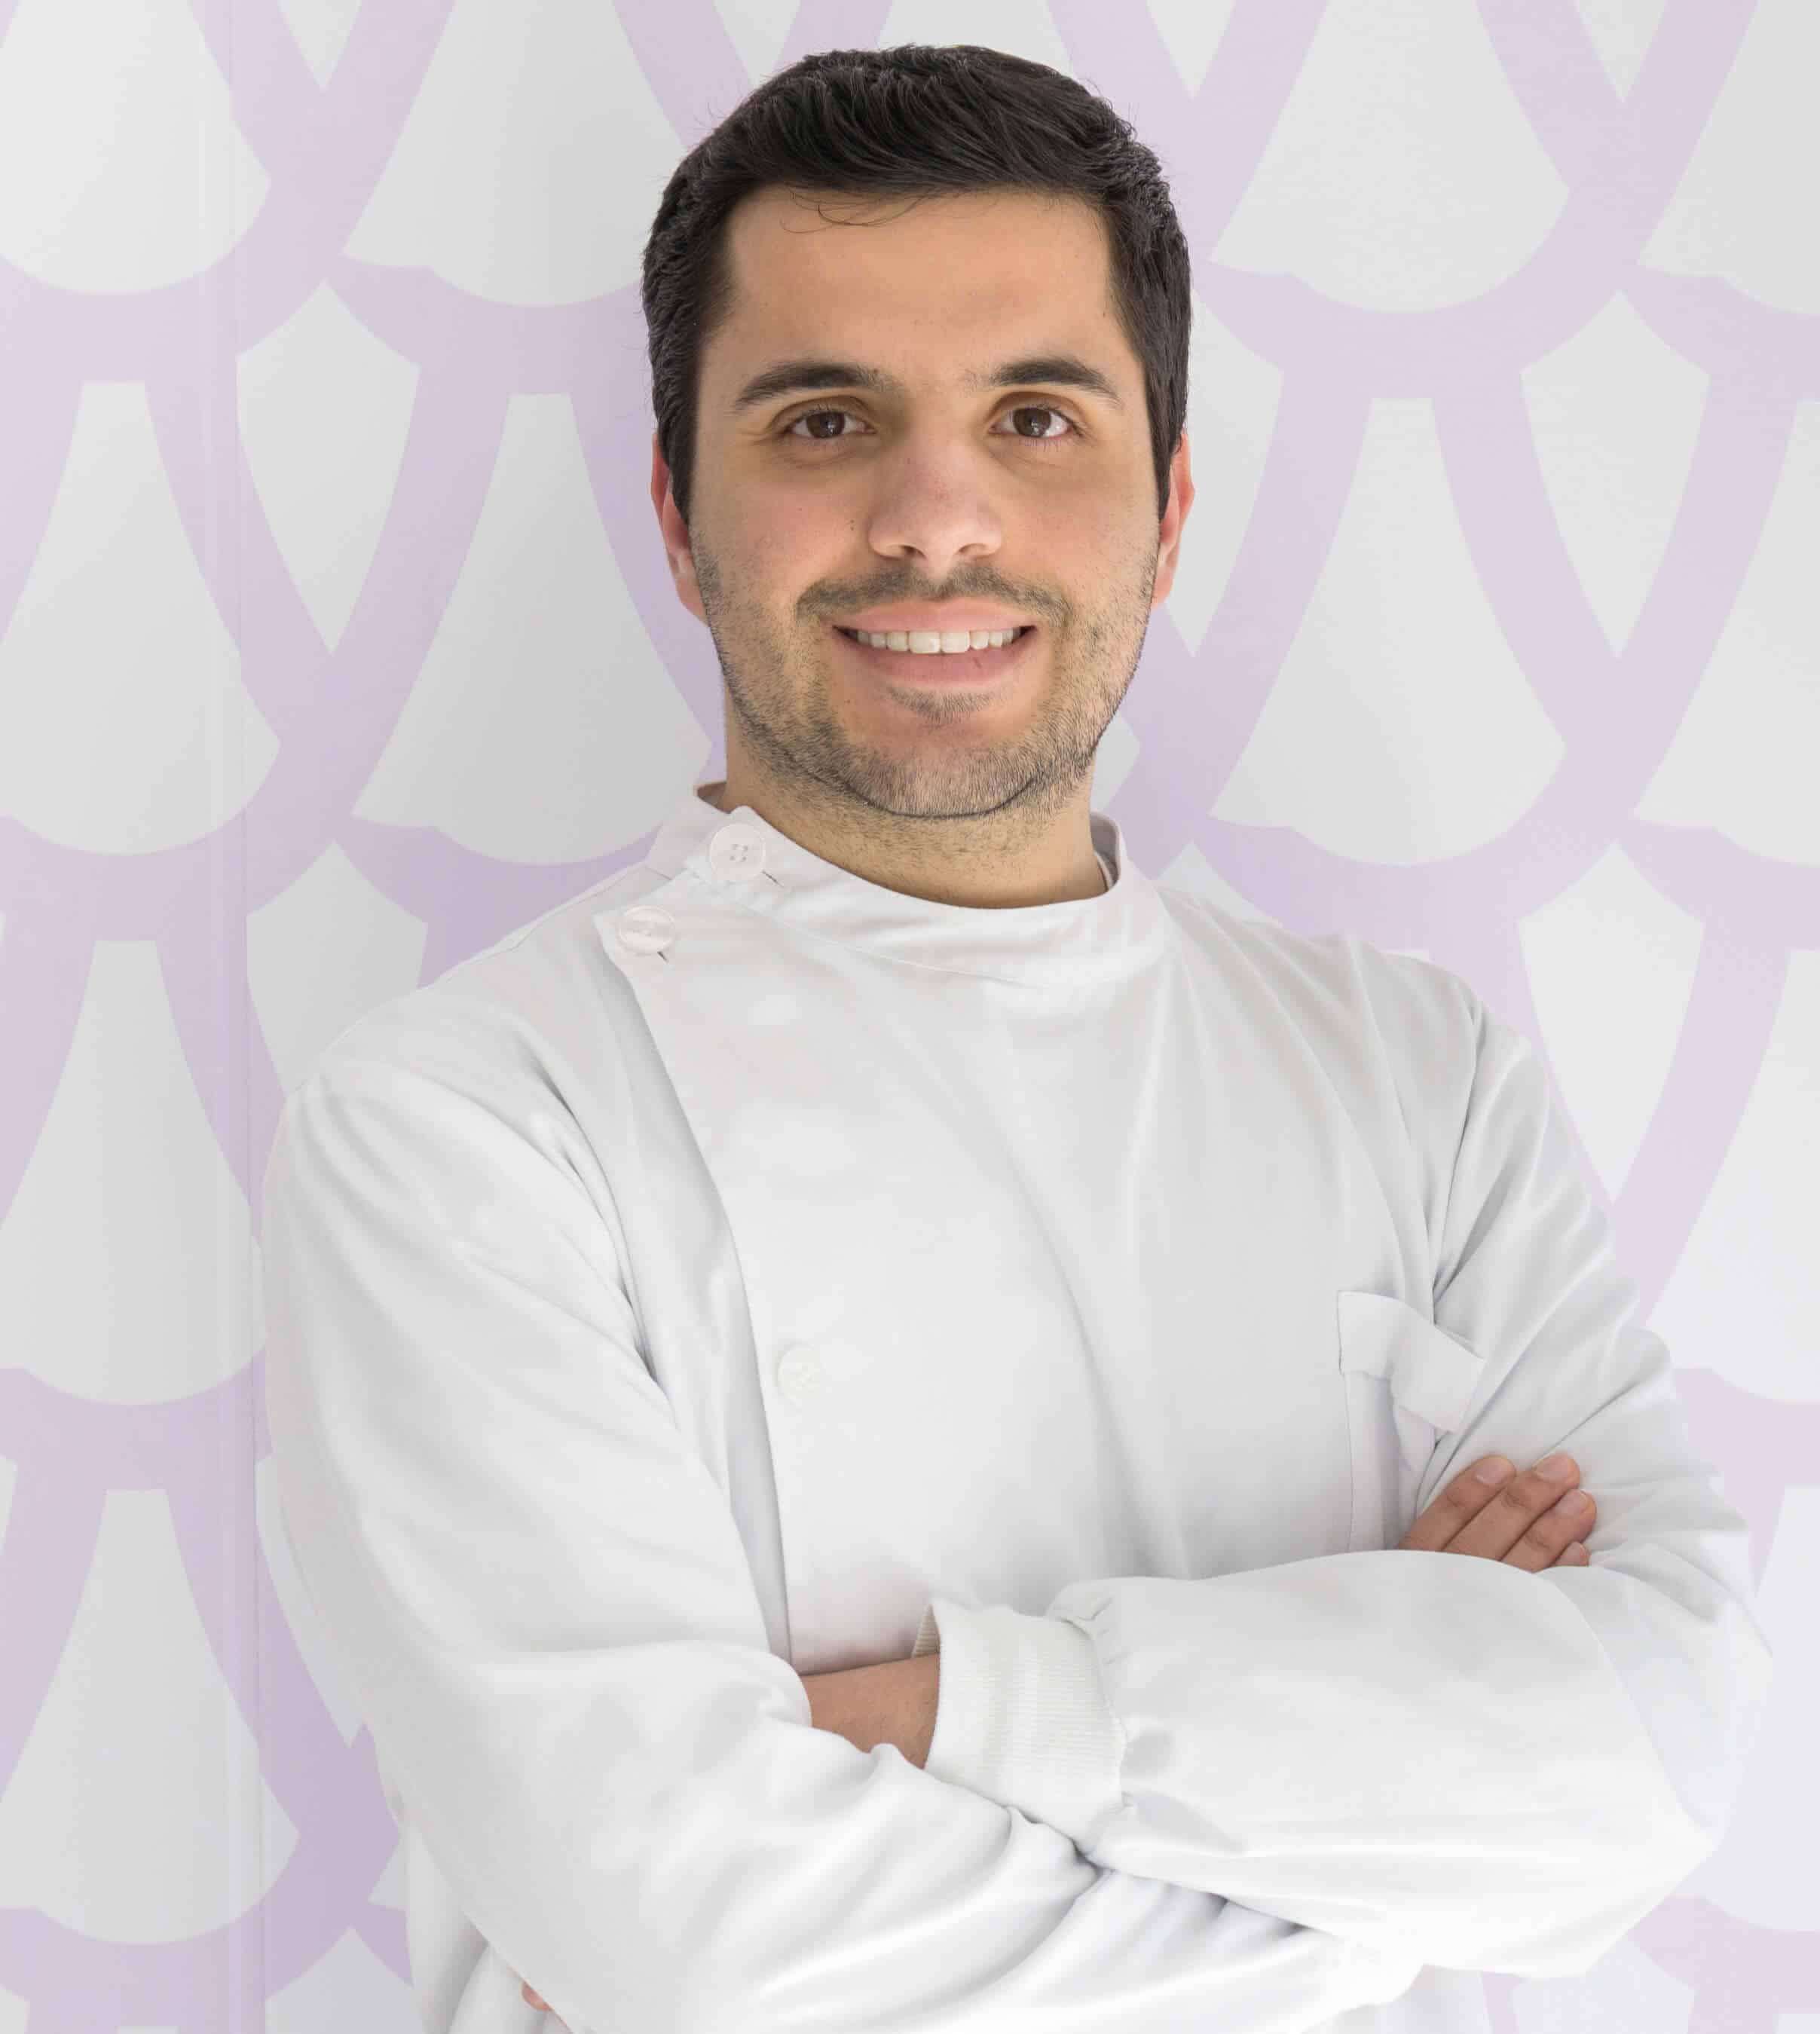 Doutor António Rajão, médico dentista na Clínica Dentária Dentya